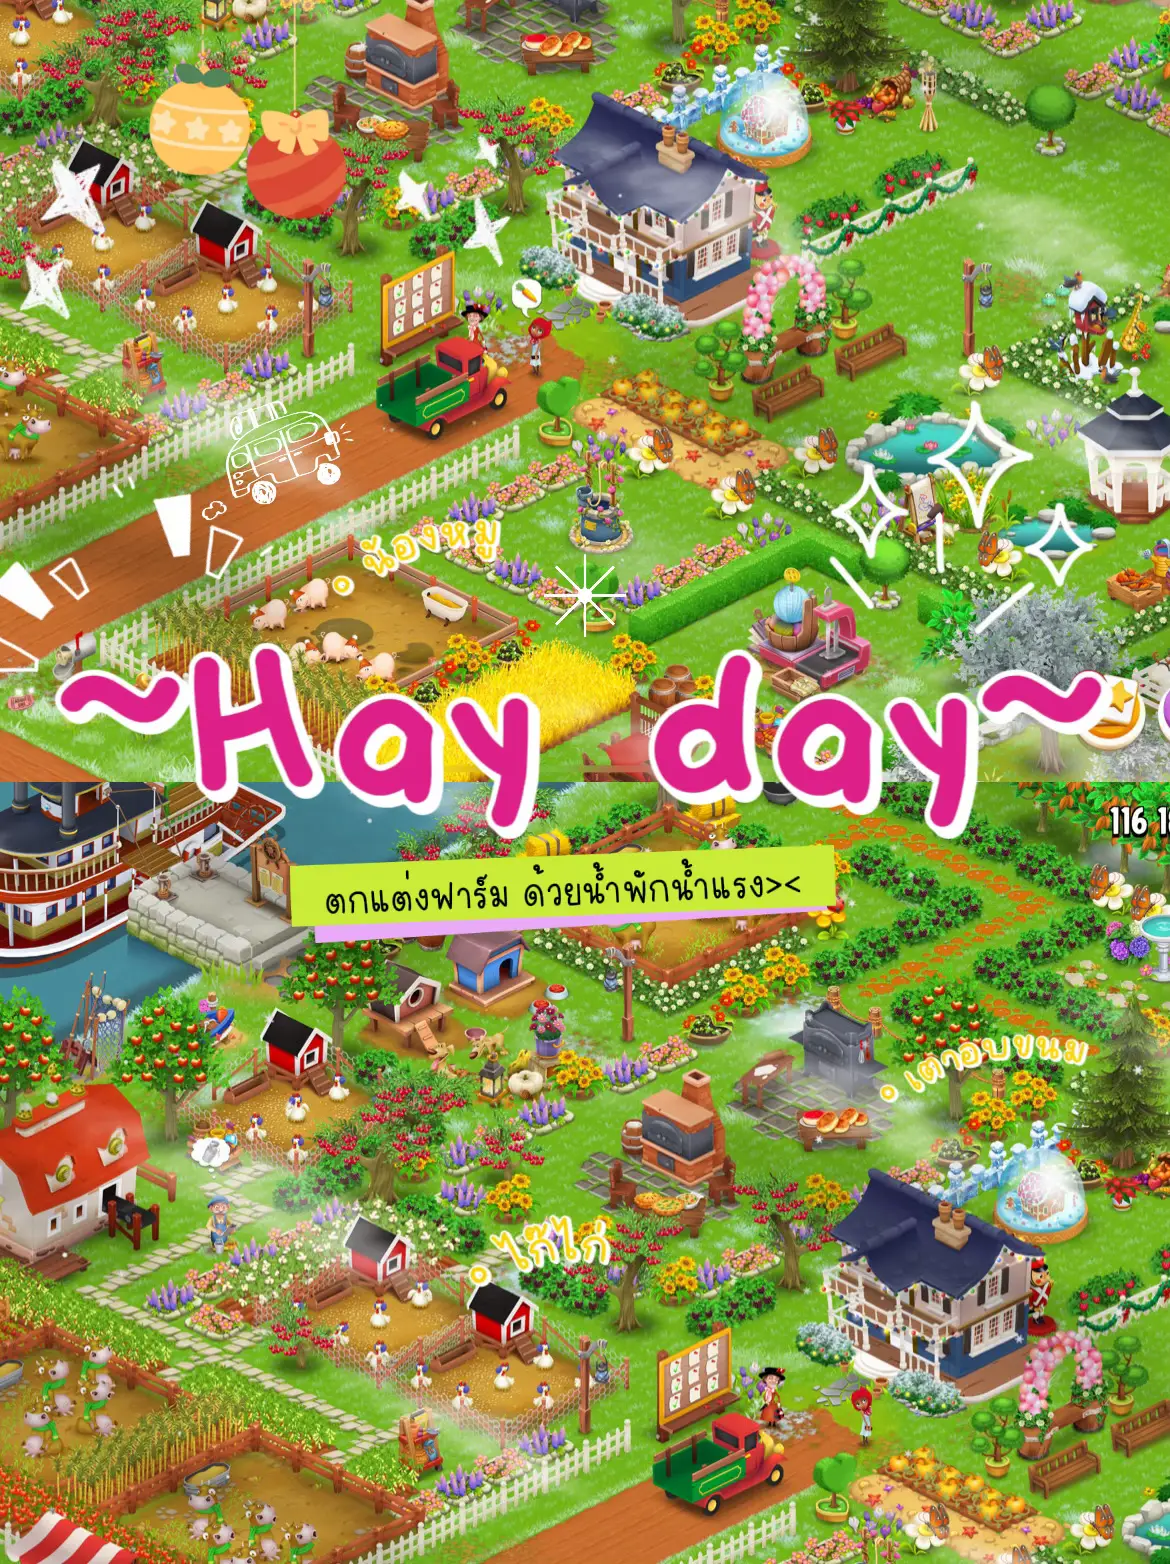 Hayday farm idea  Hayday farm design, Hay day, Farm crafts